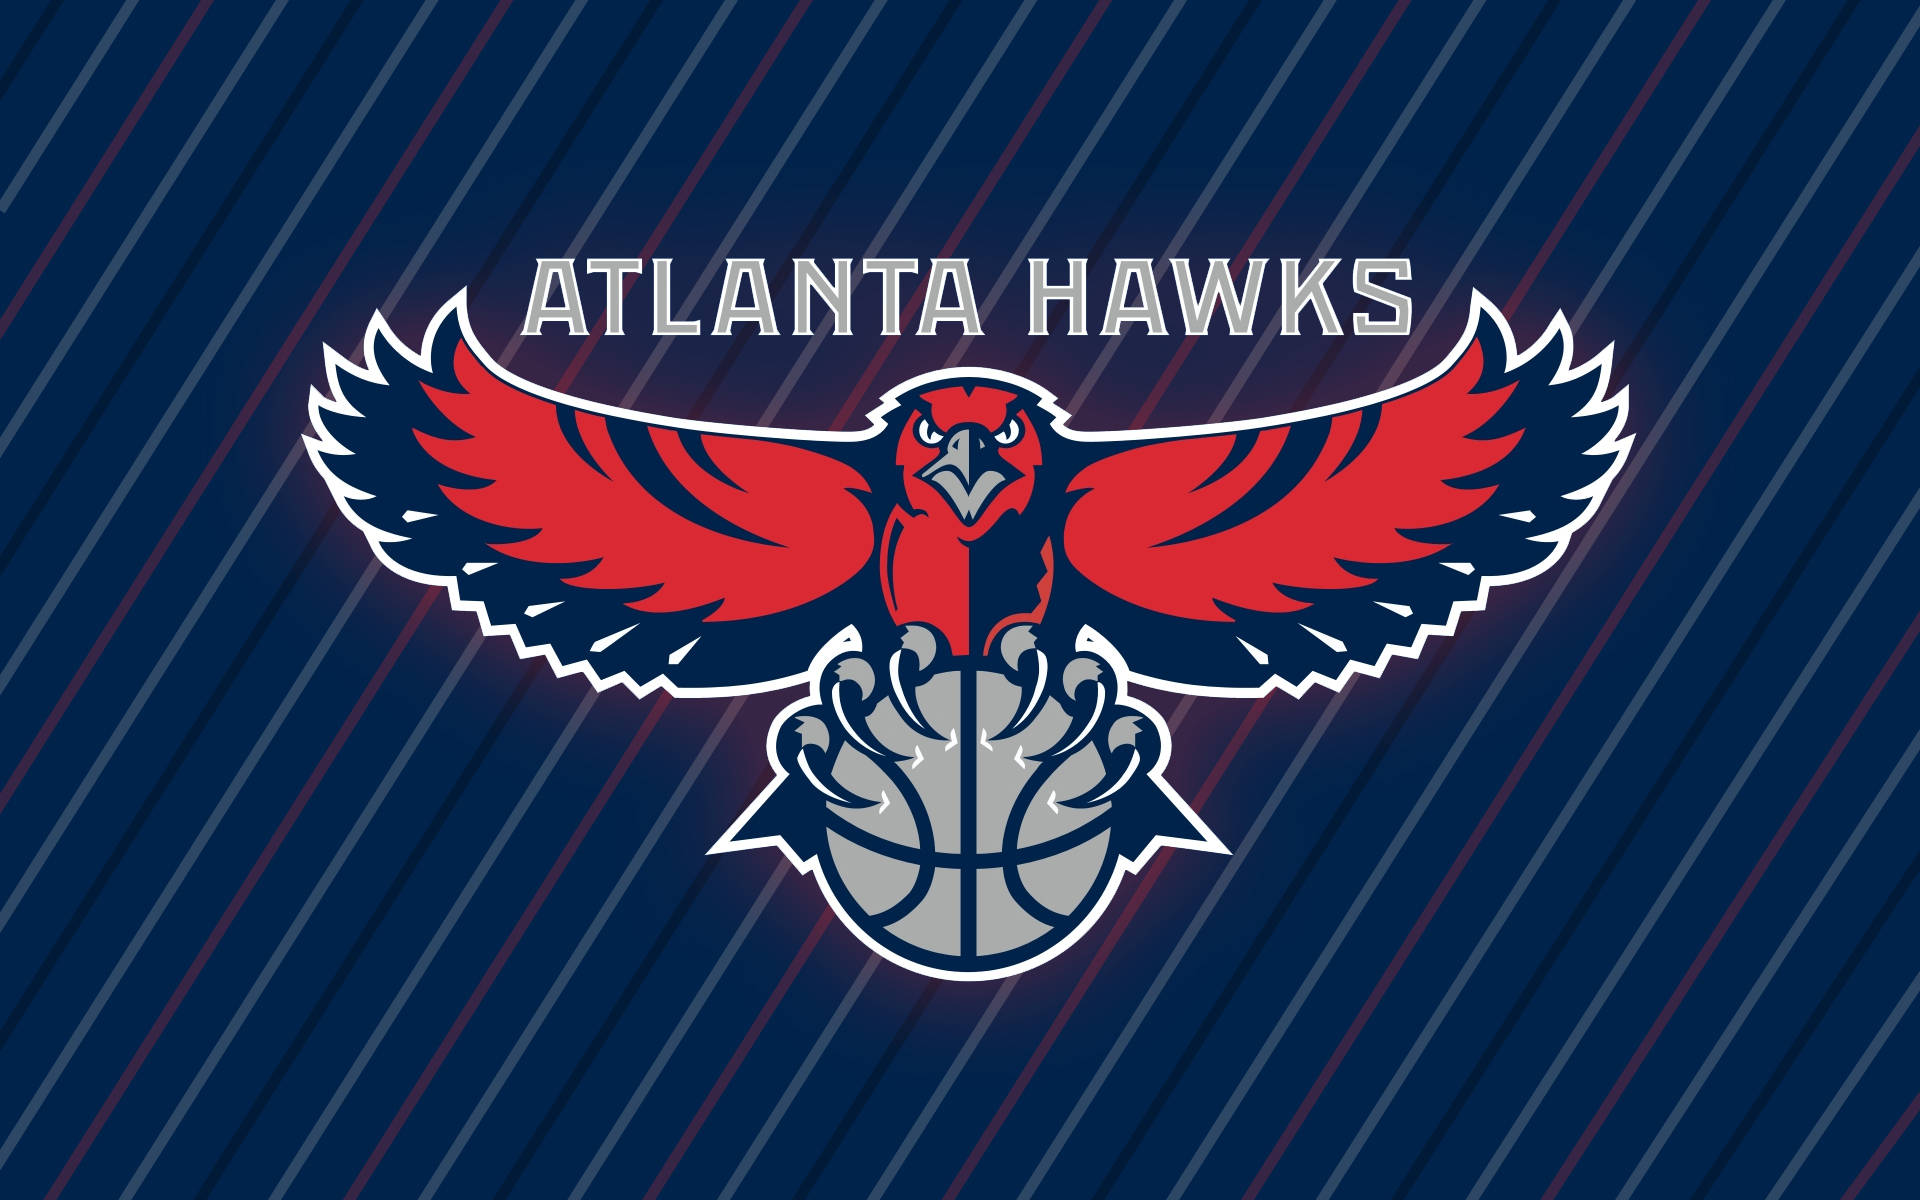 Papelde Parede Com O Logo Da Atlanta Hawks Na Cor Azul. Papel de Parede